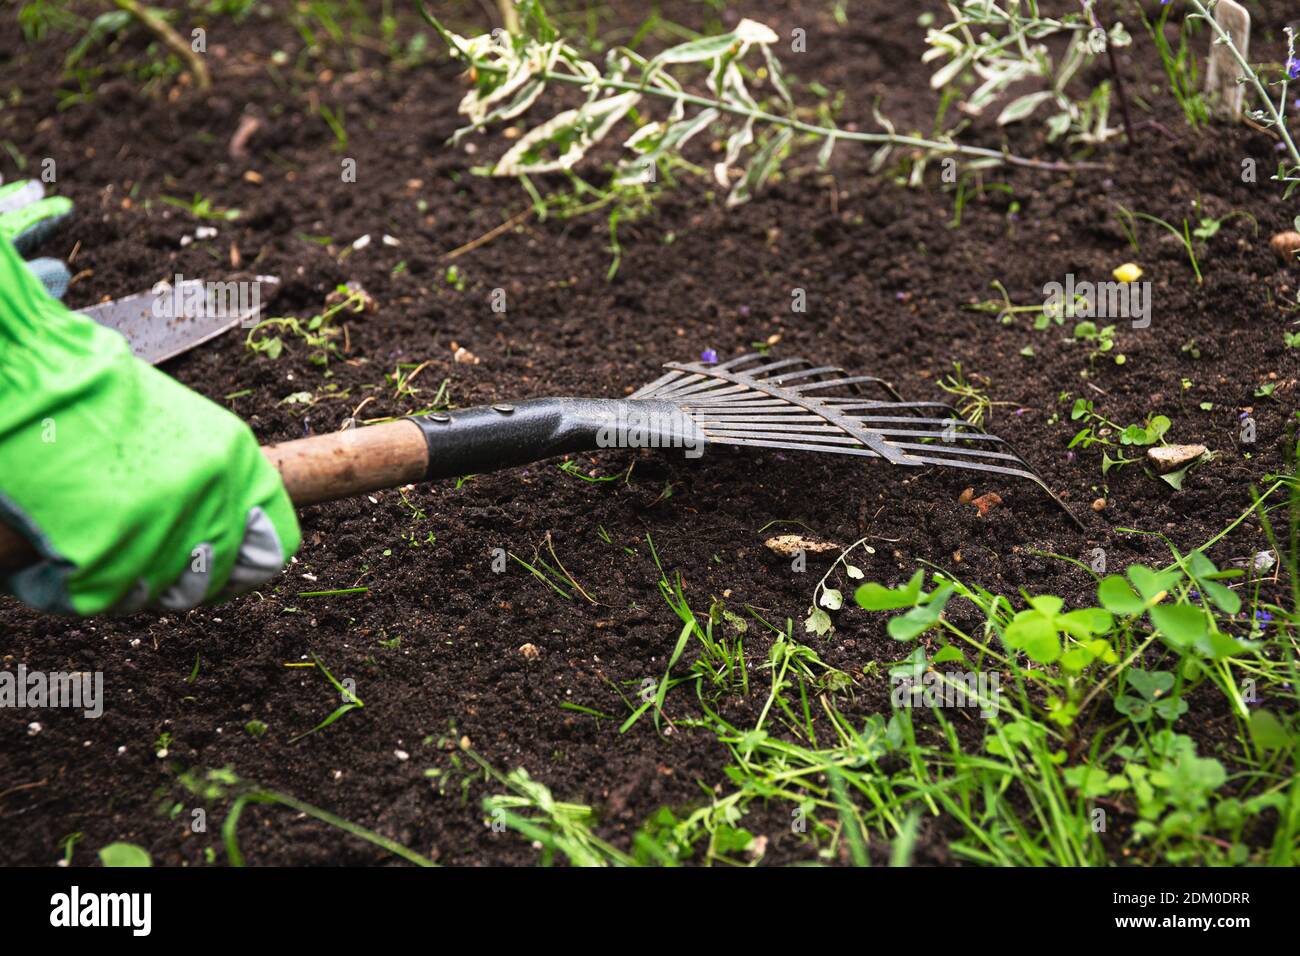 Gärtner Pflege ein Blumenbeet. Die Hände des Gärtners verwenden einen Rechen, um den Boden für das Pflanzen von Samen und Pflanzen zu lockern. Handschuhe Stockfoto